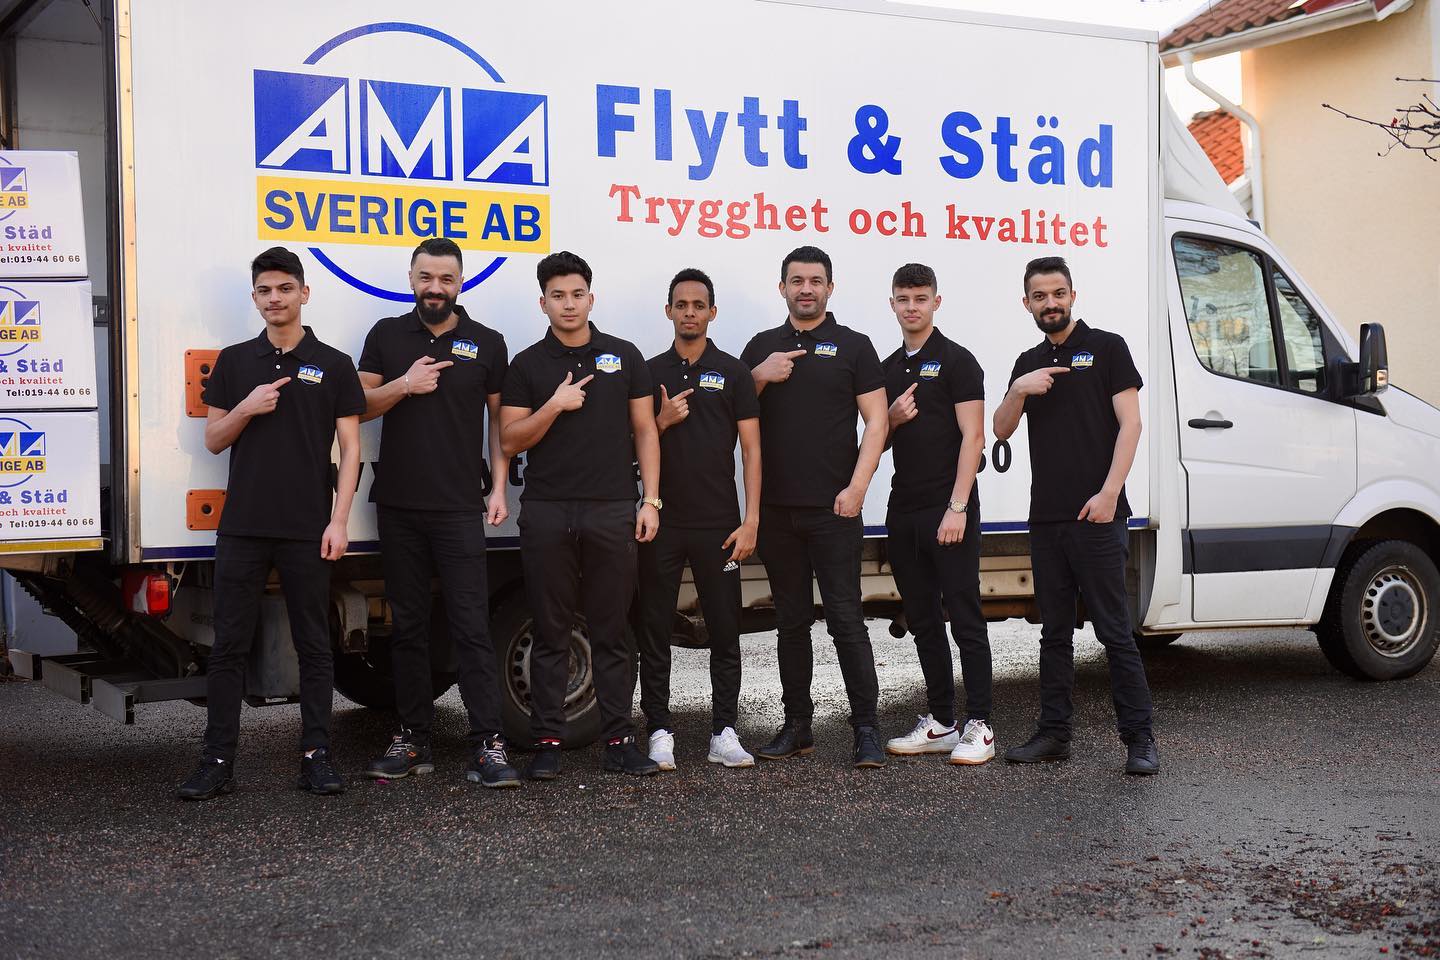 Flytt & städ AMA Sverig AB - Jämförflytt.se